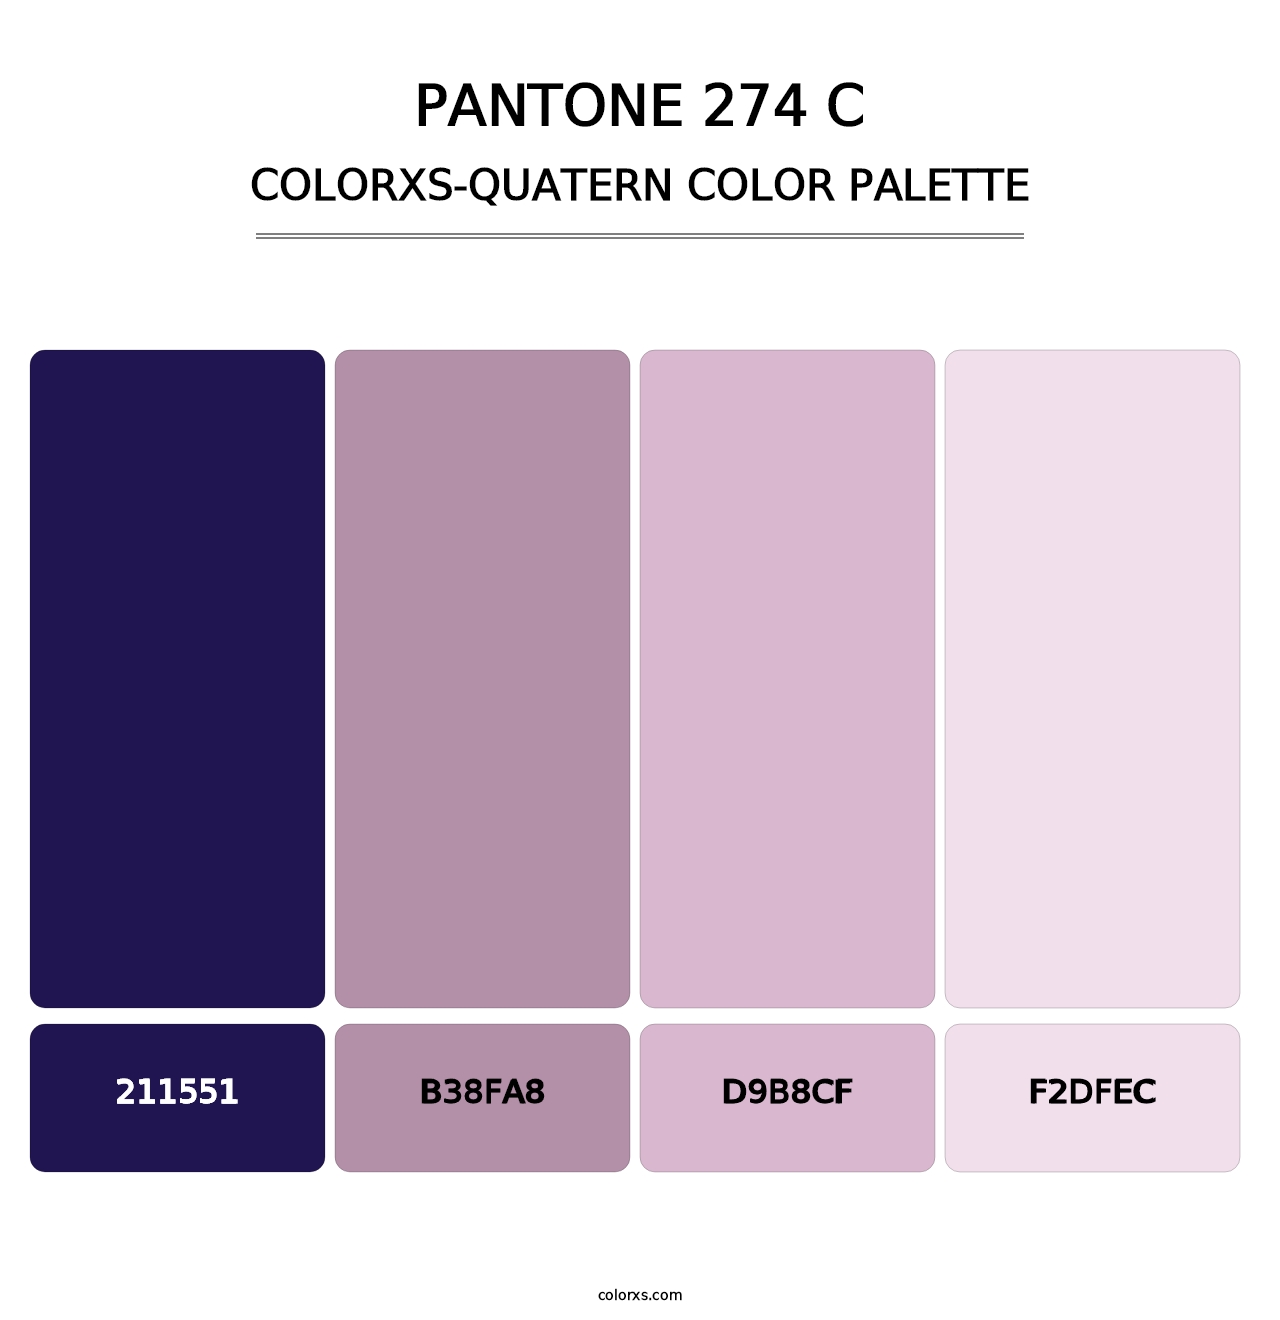 PANTONE 274 C - Colorxs Quatern Palette